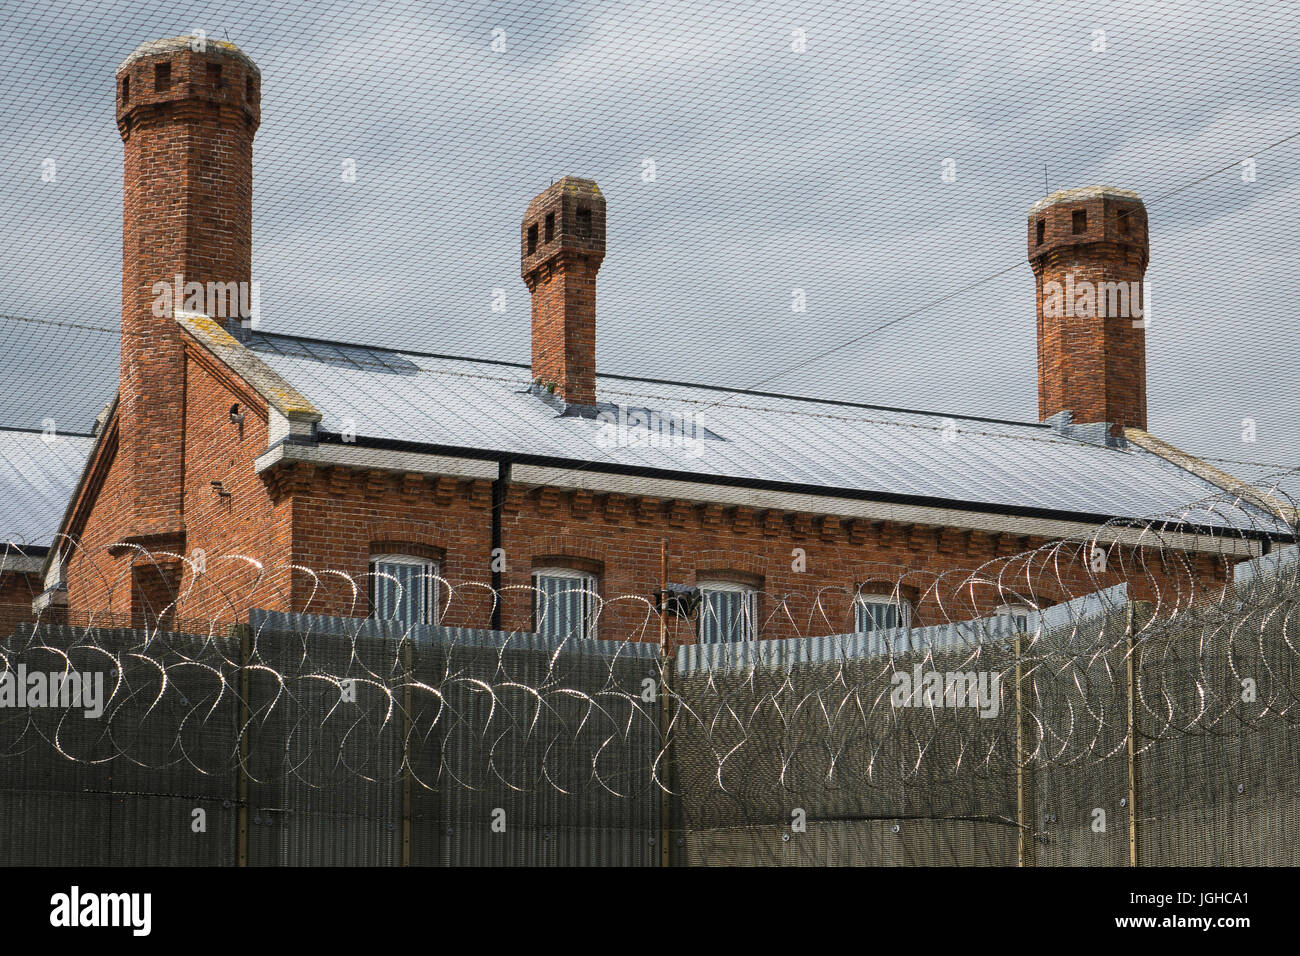 England, Dorset, Dorchester prison, razor wire security round main block Stock Photo